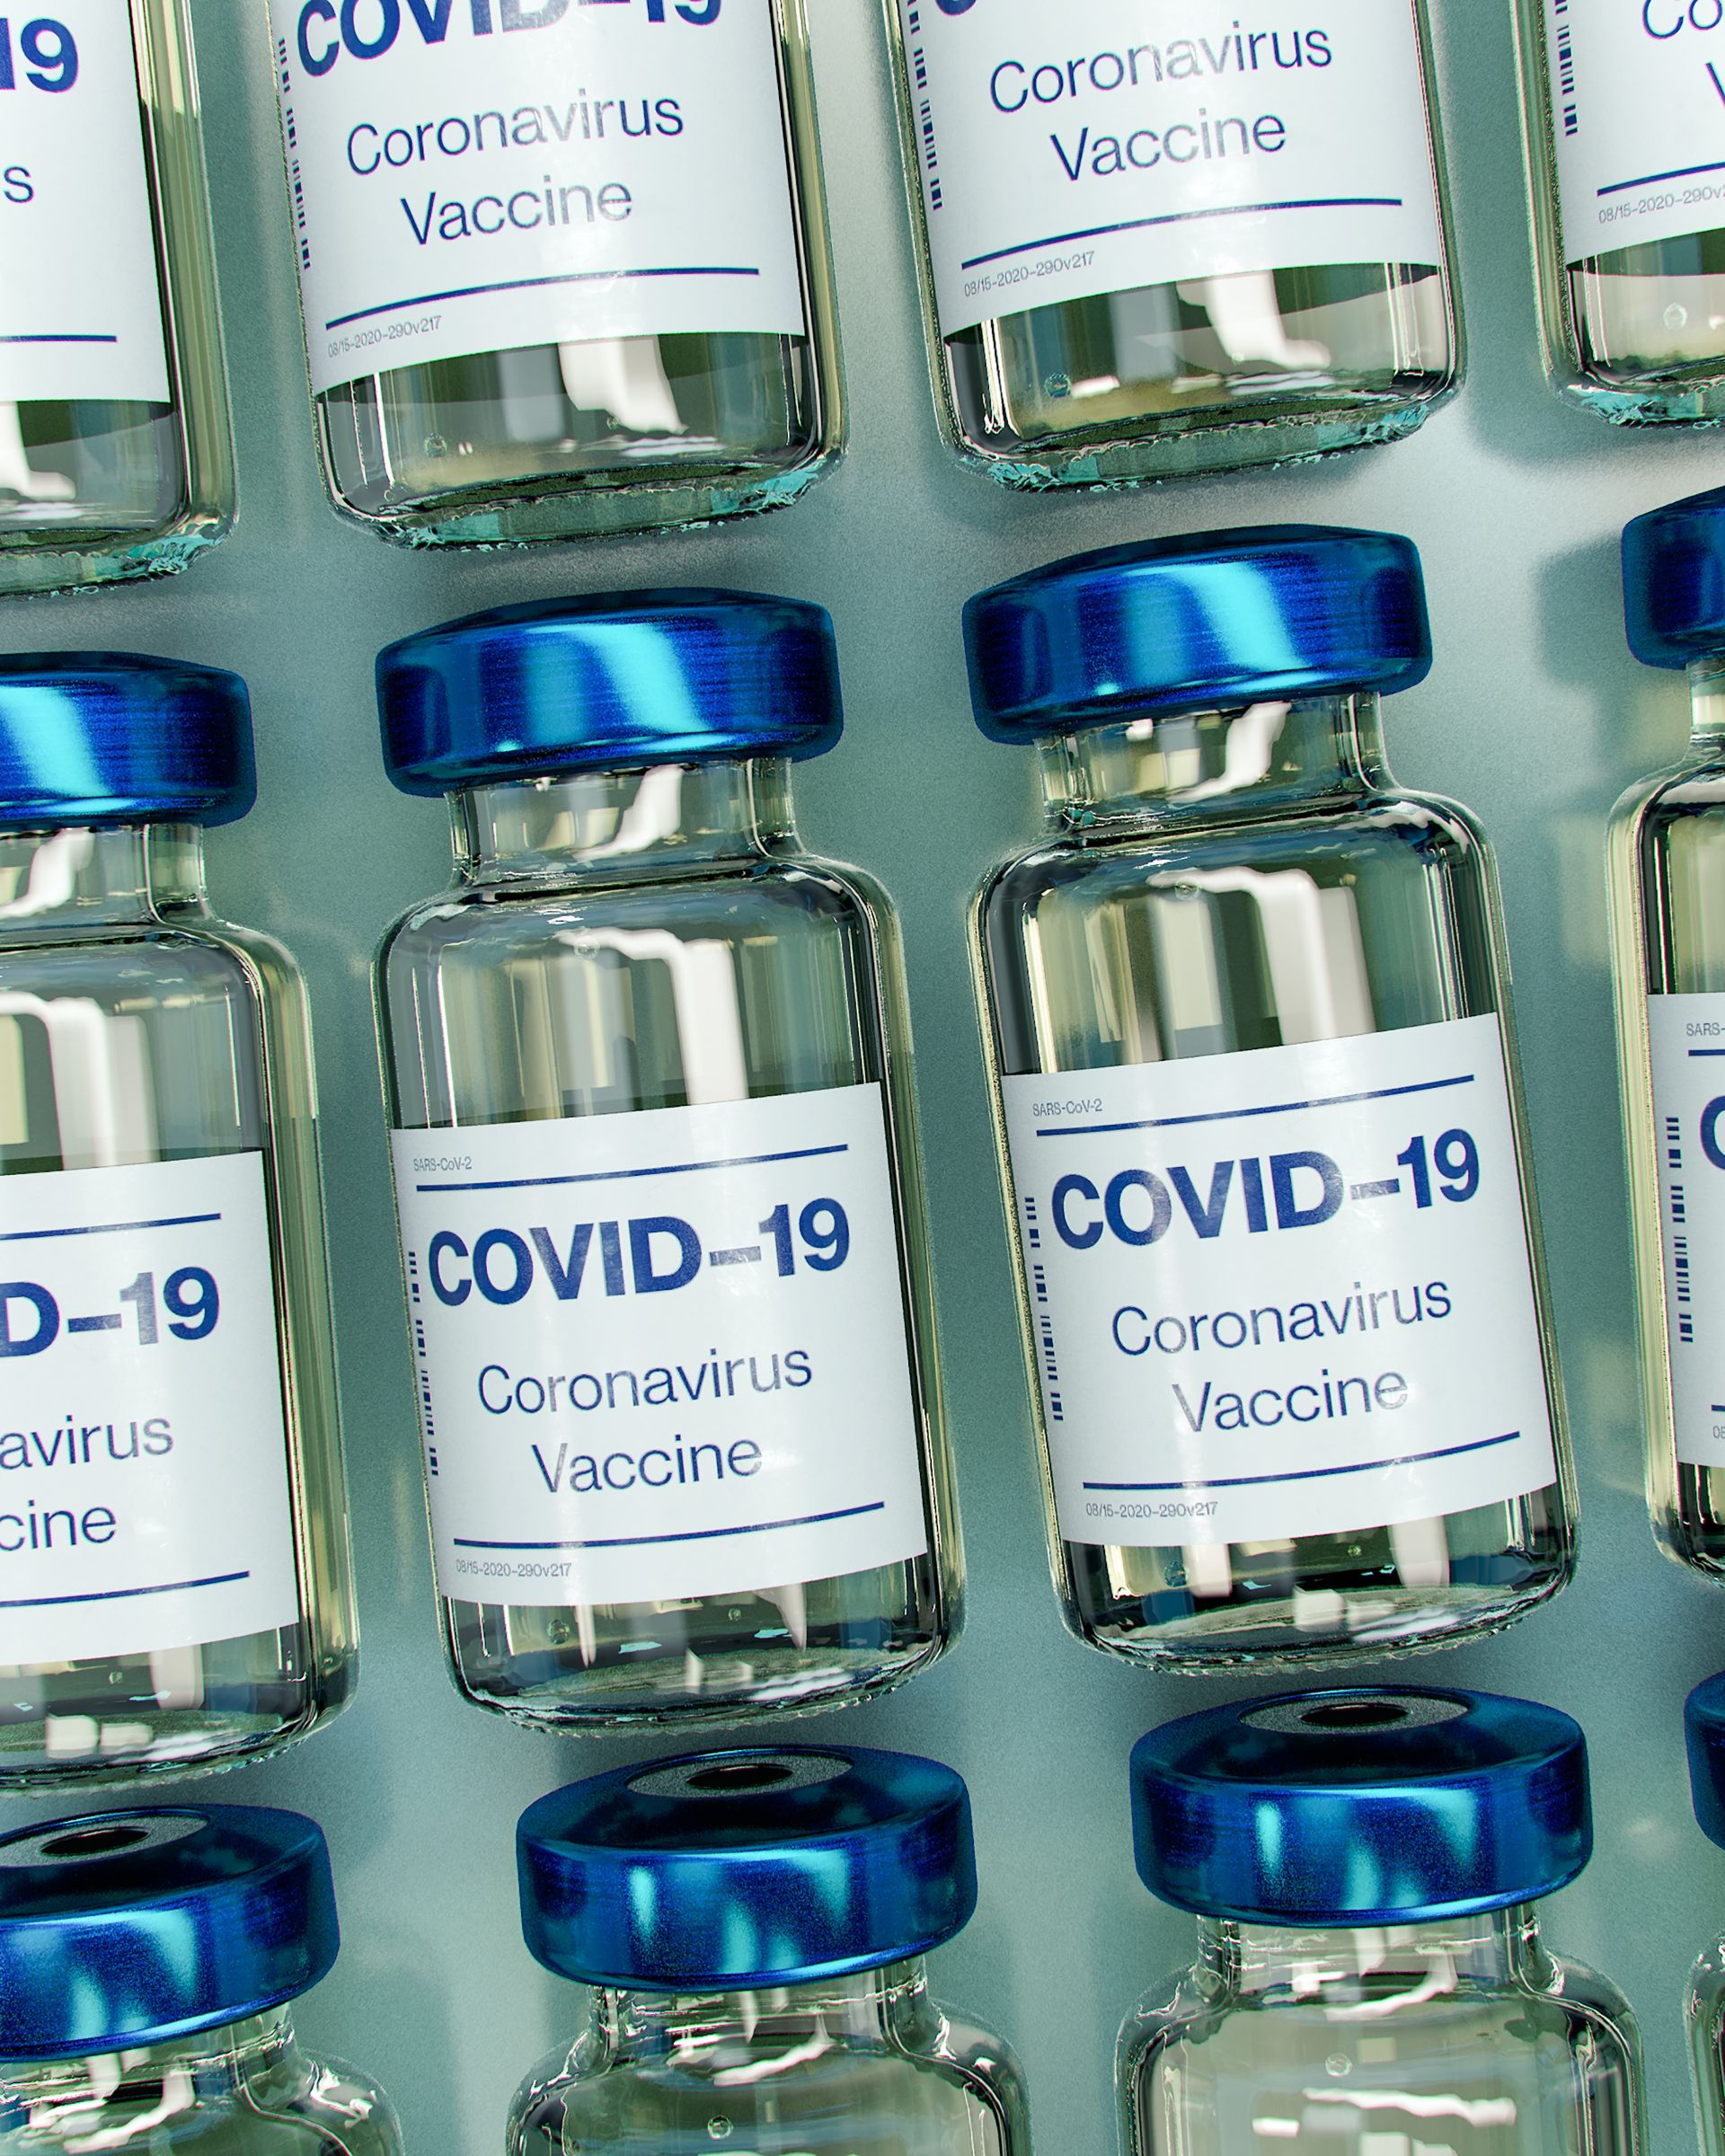 vaccin impotriva covid-19 prioritate la vaccinare